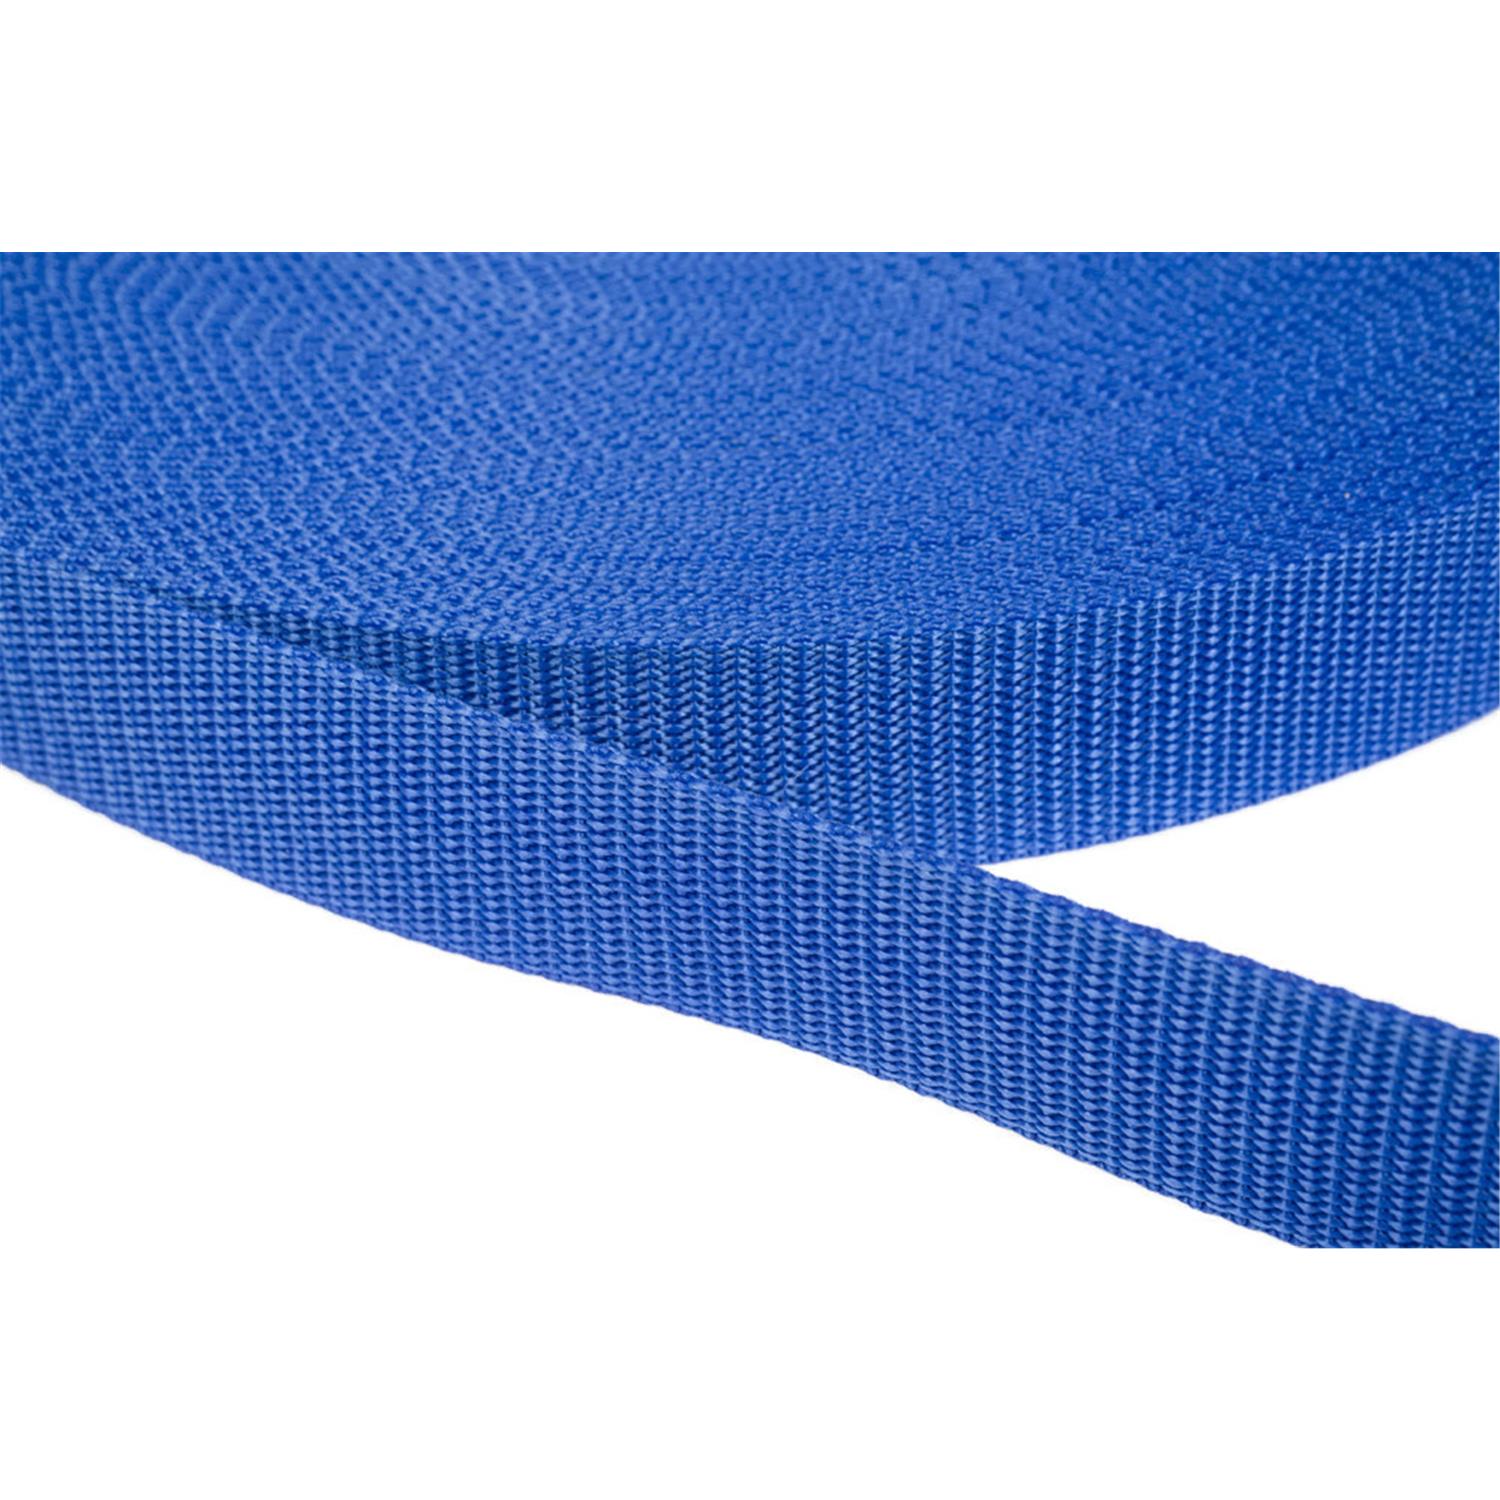 Gurtband 10mm breit aus Polypropylen in 41 Farben 26 - royalblau 12 Meter